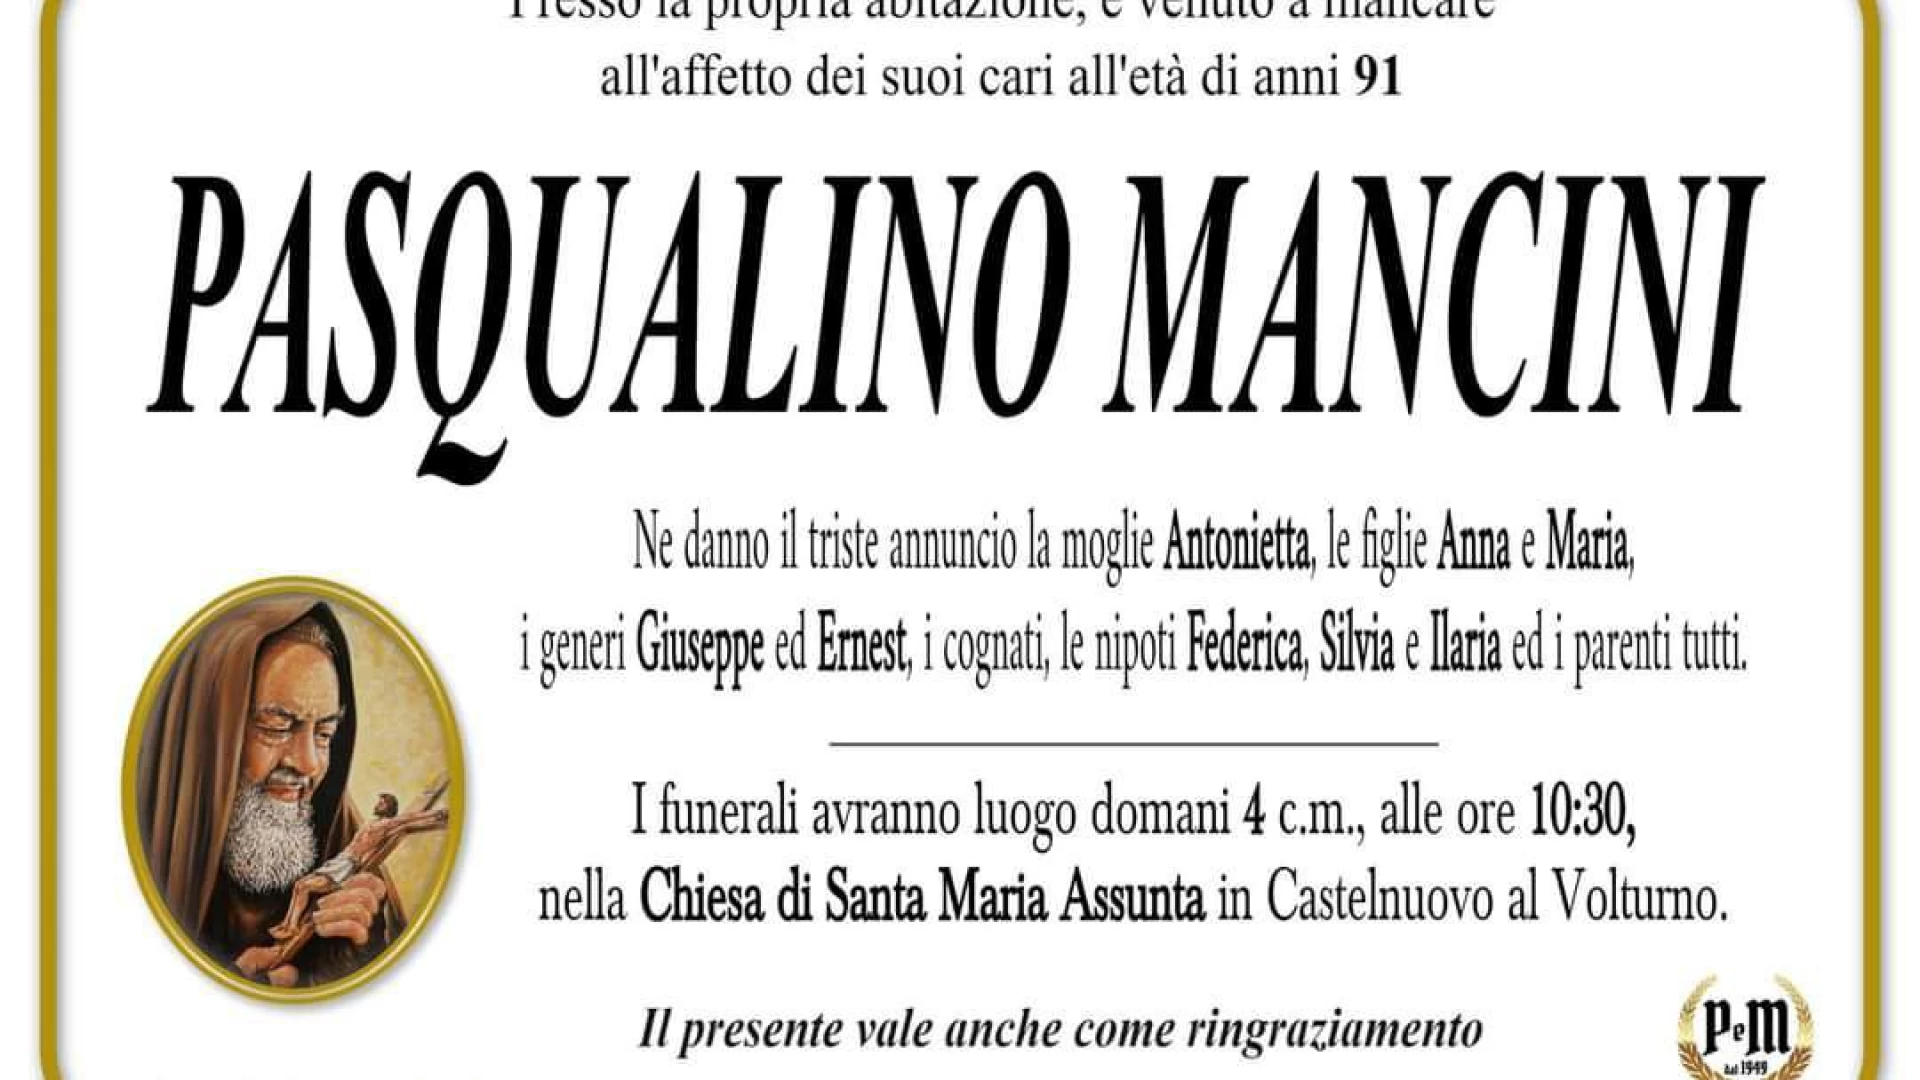 Il Cordoglio dell'Associazione Il Cervo di Castelnuovo al Volturno per la scomparsa del caro Pasqualino Mancini.